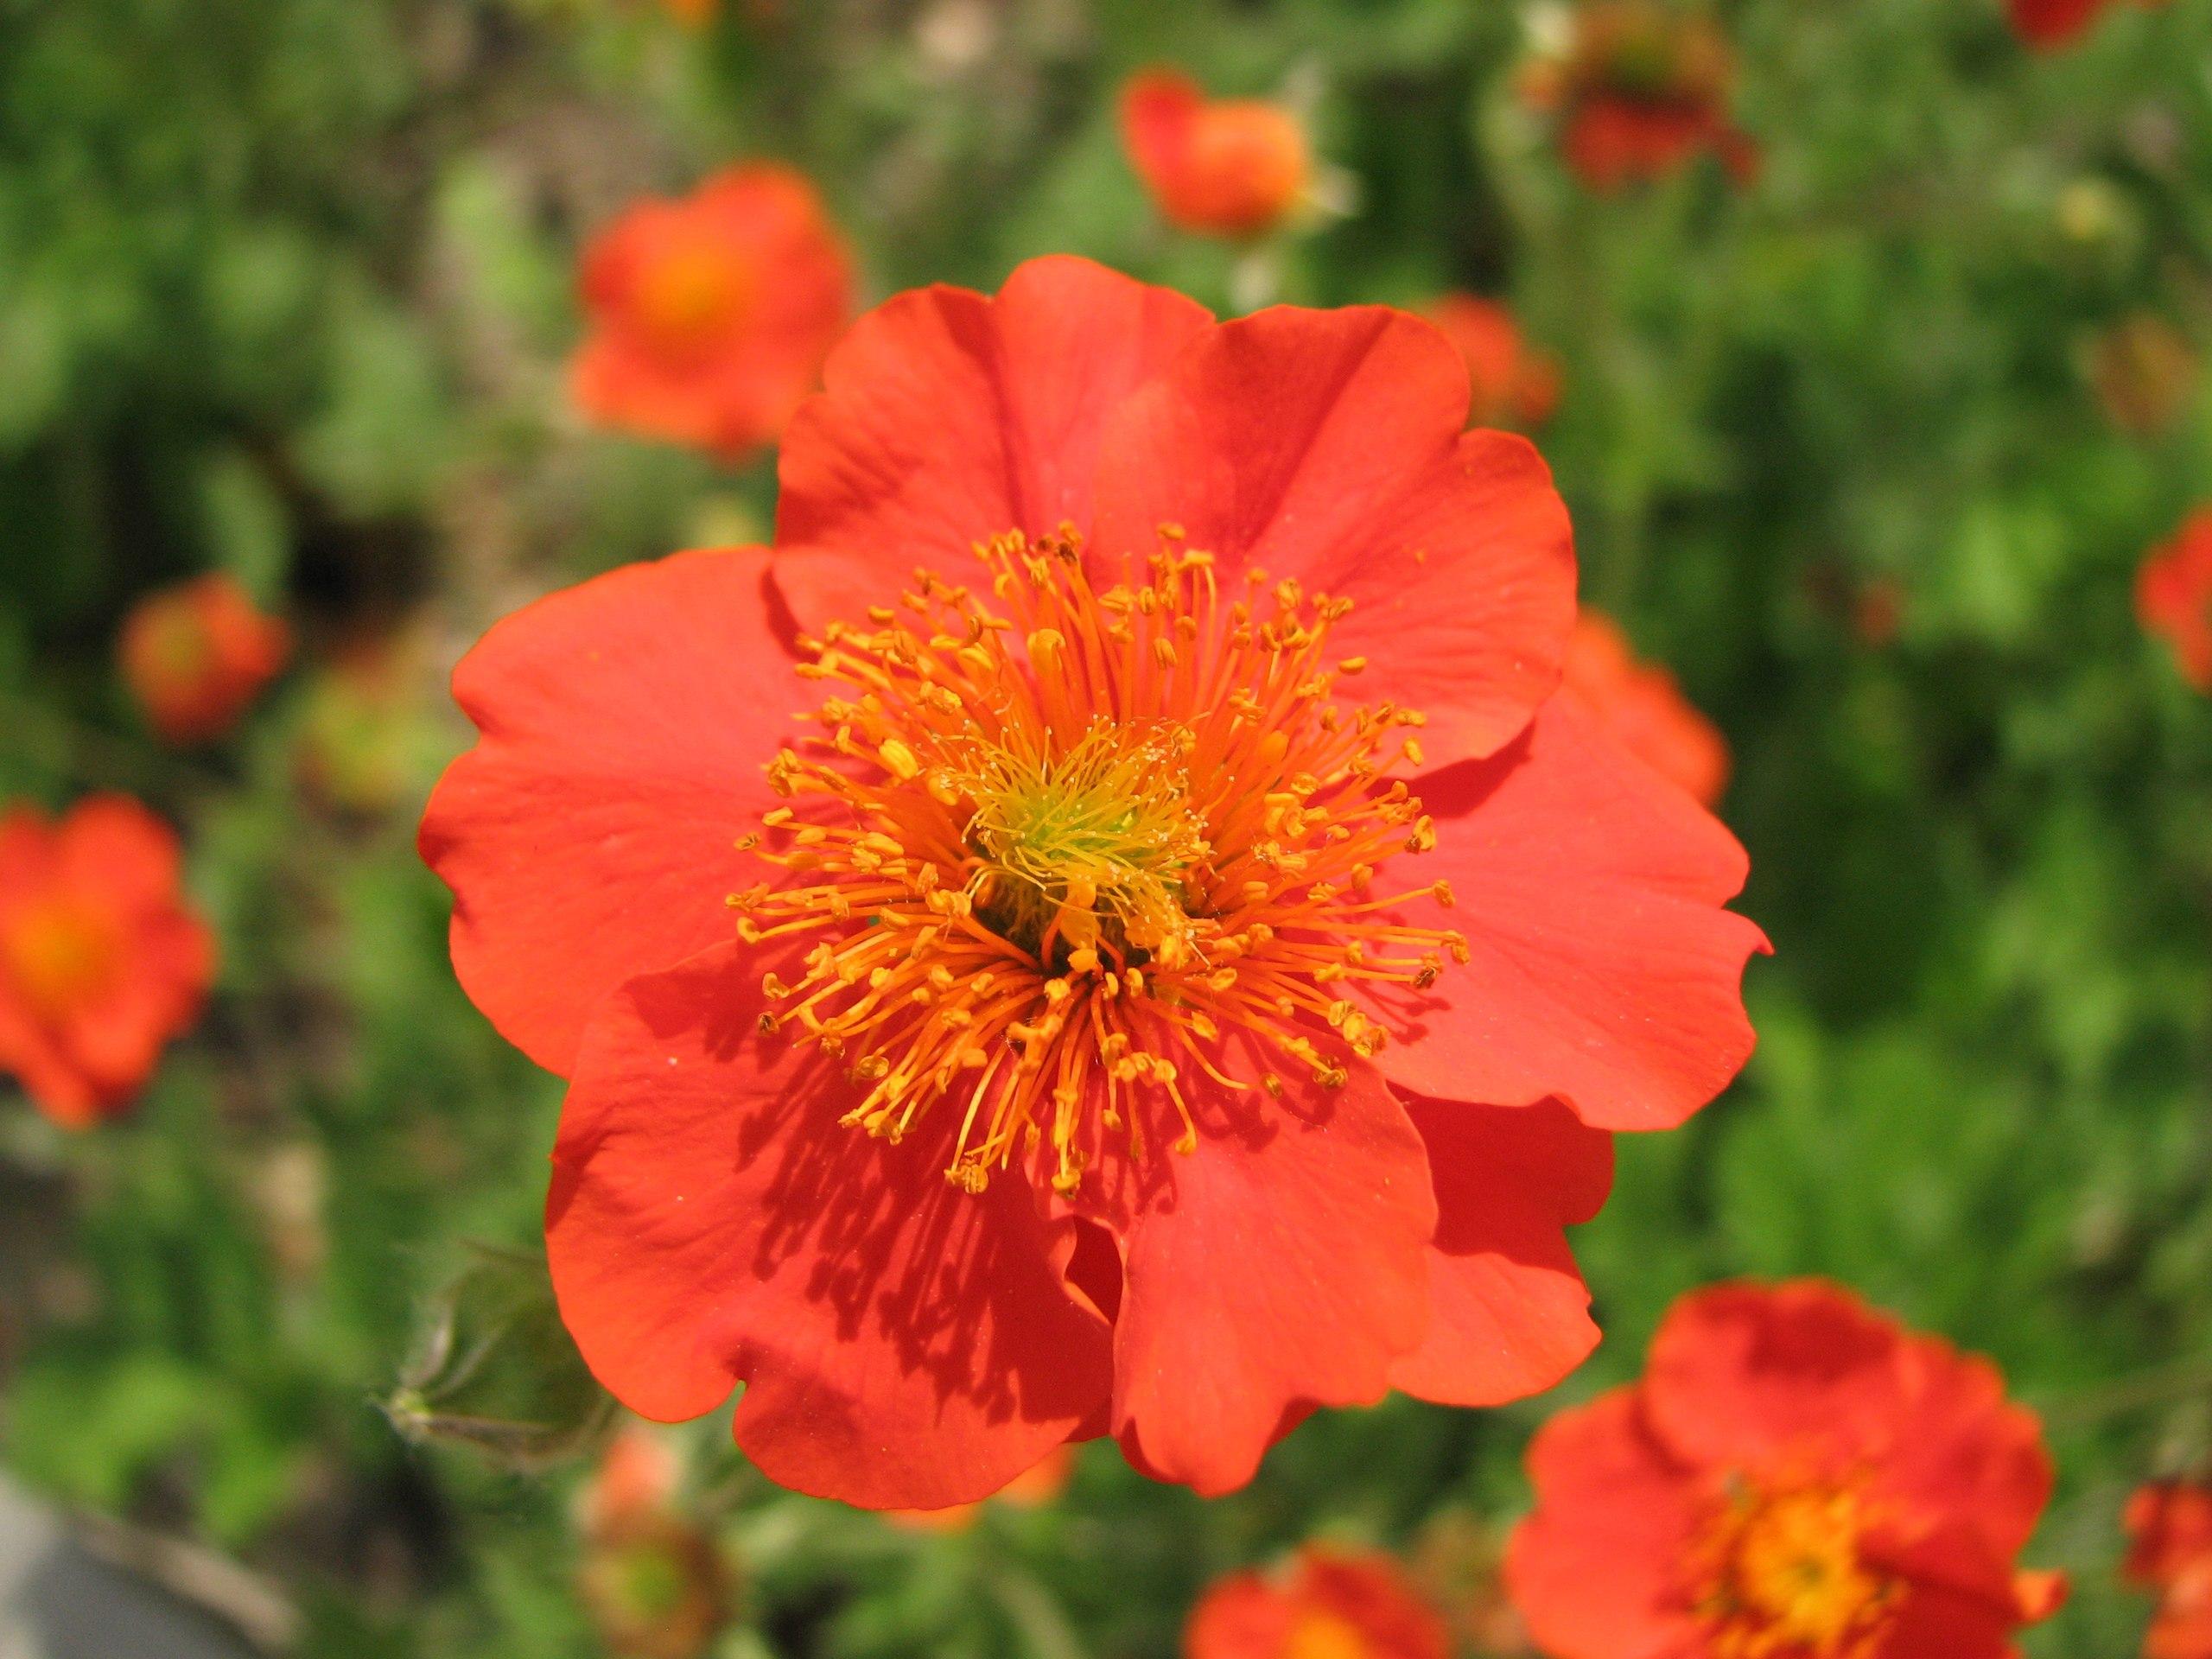 orange-red flower with yellow stamen.